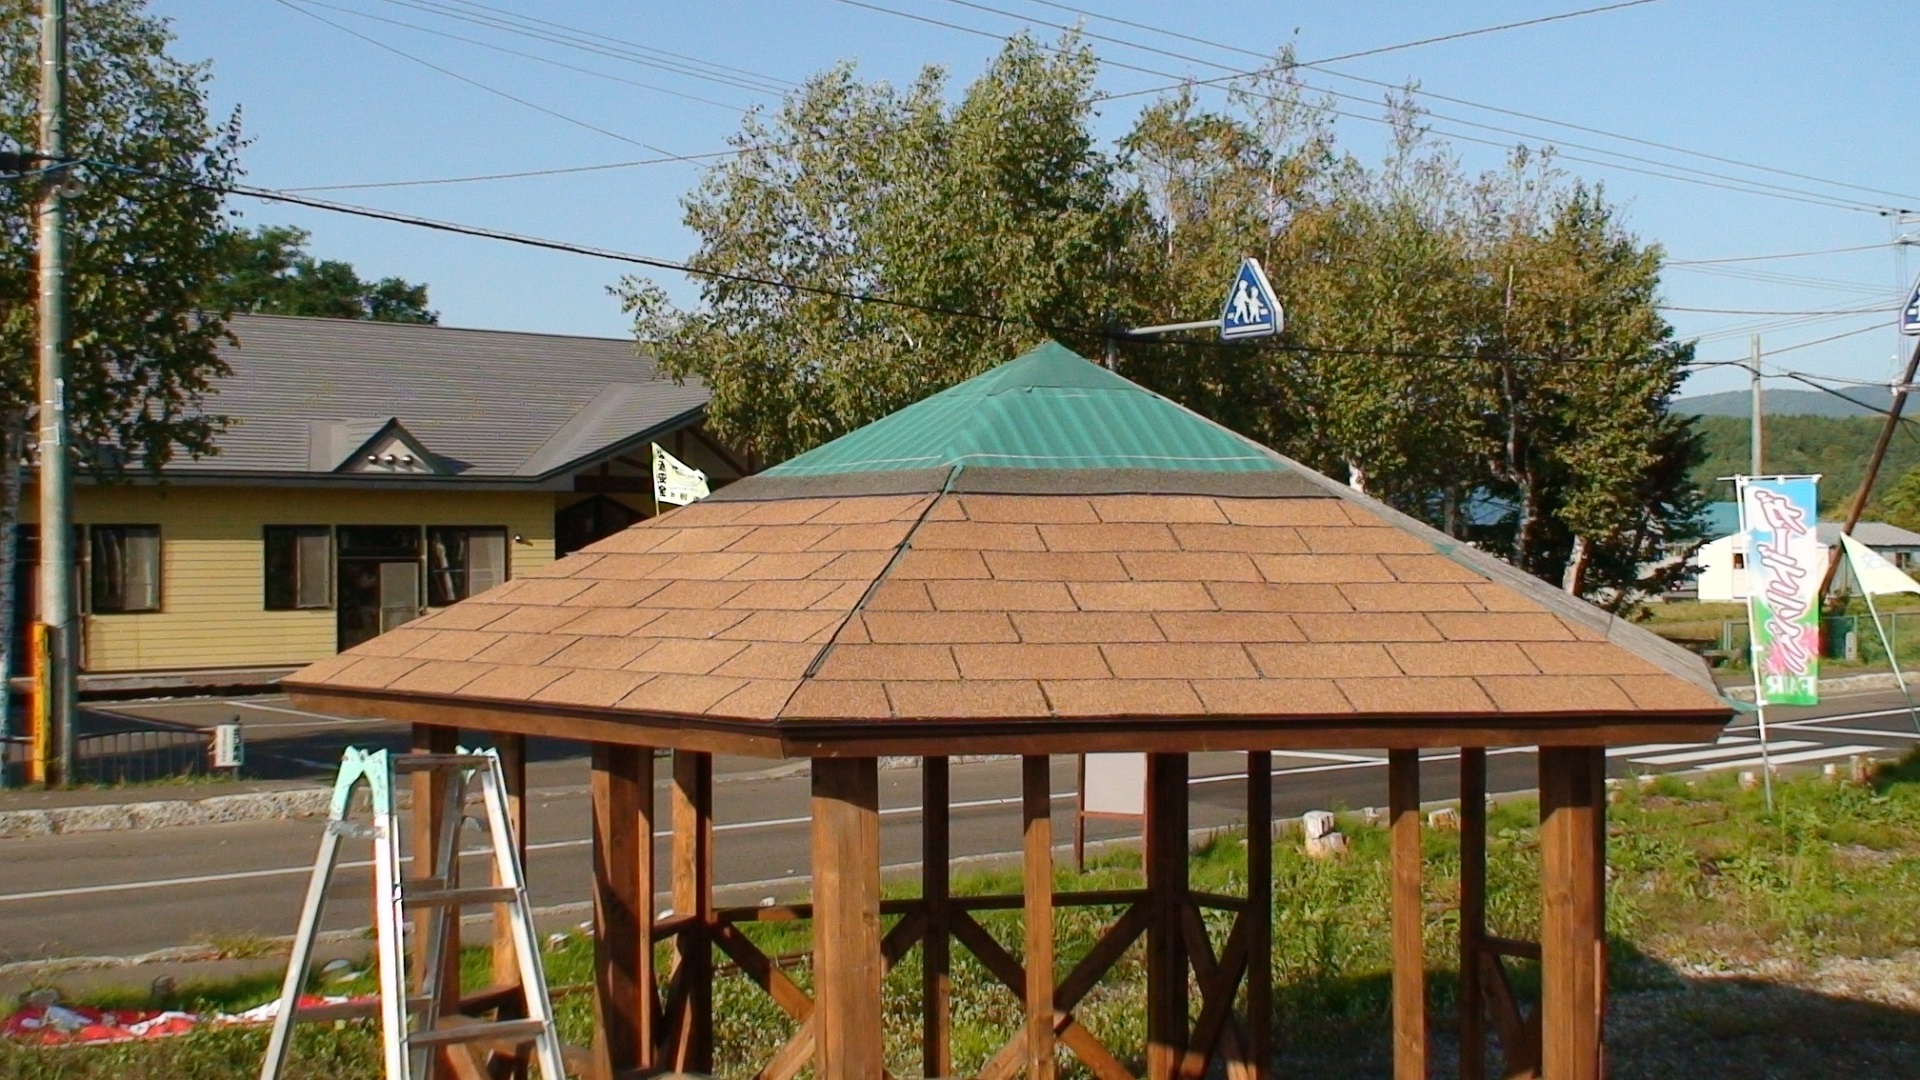 寄棟屋根は切妻や片流れに比べると、部材の点数が多く加工も角度も複雑。